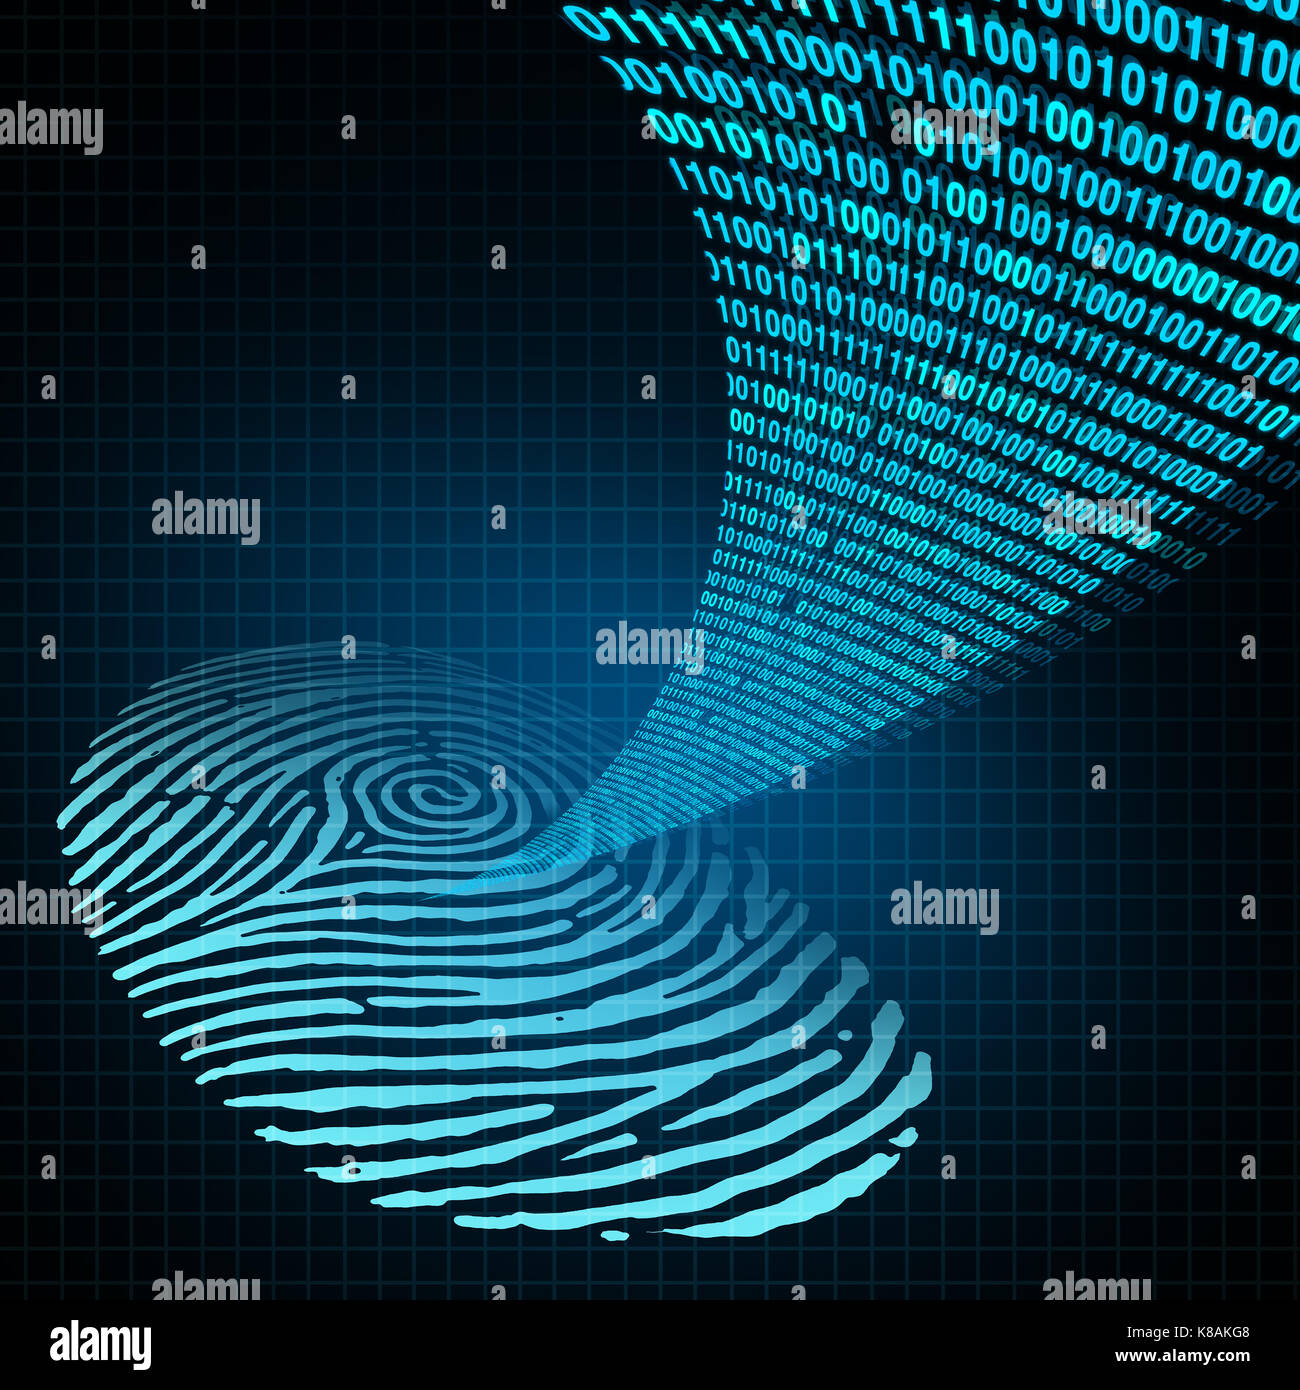 Sicherheit Passwort persönliche Identifikation Sicherheit login Konzept als Technologie Sicherheit Software wie einen Menschen an seinem Fingerabdruck mit Daten Code. Stockfoto